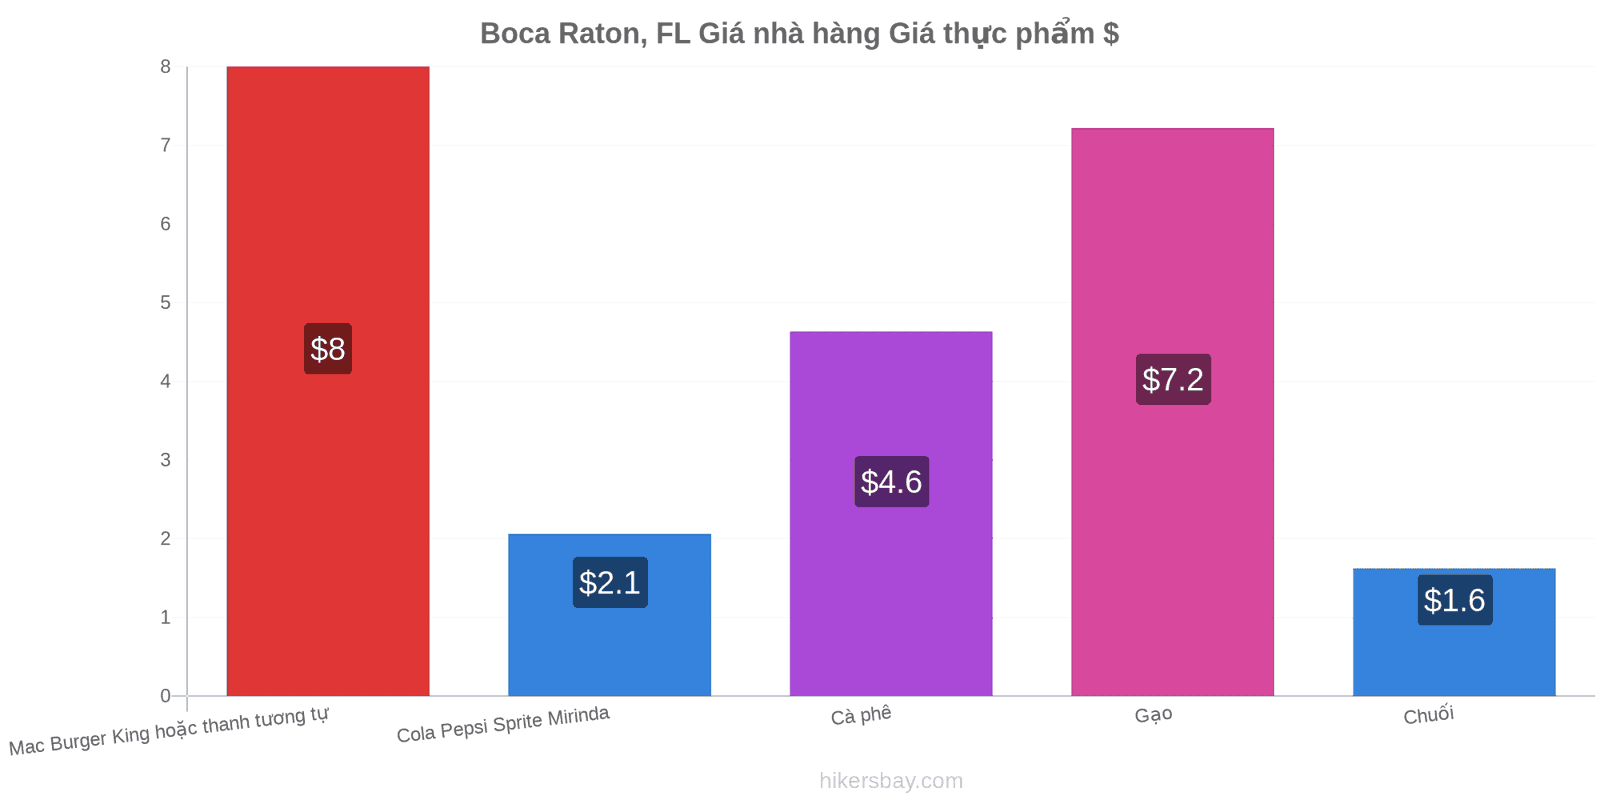 Boca Raton, FL thay đổi giá cả hikersbay.com